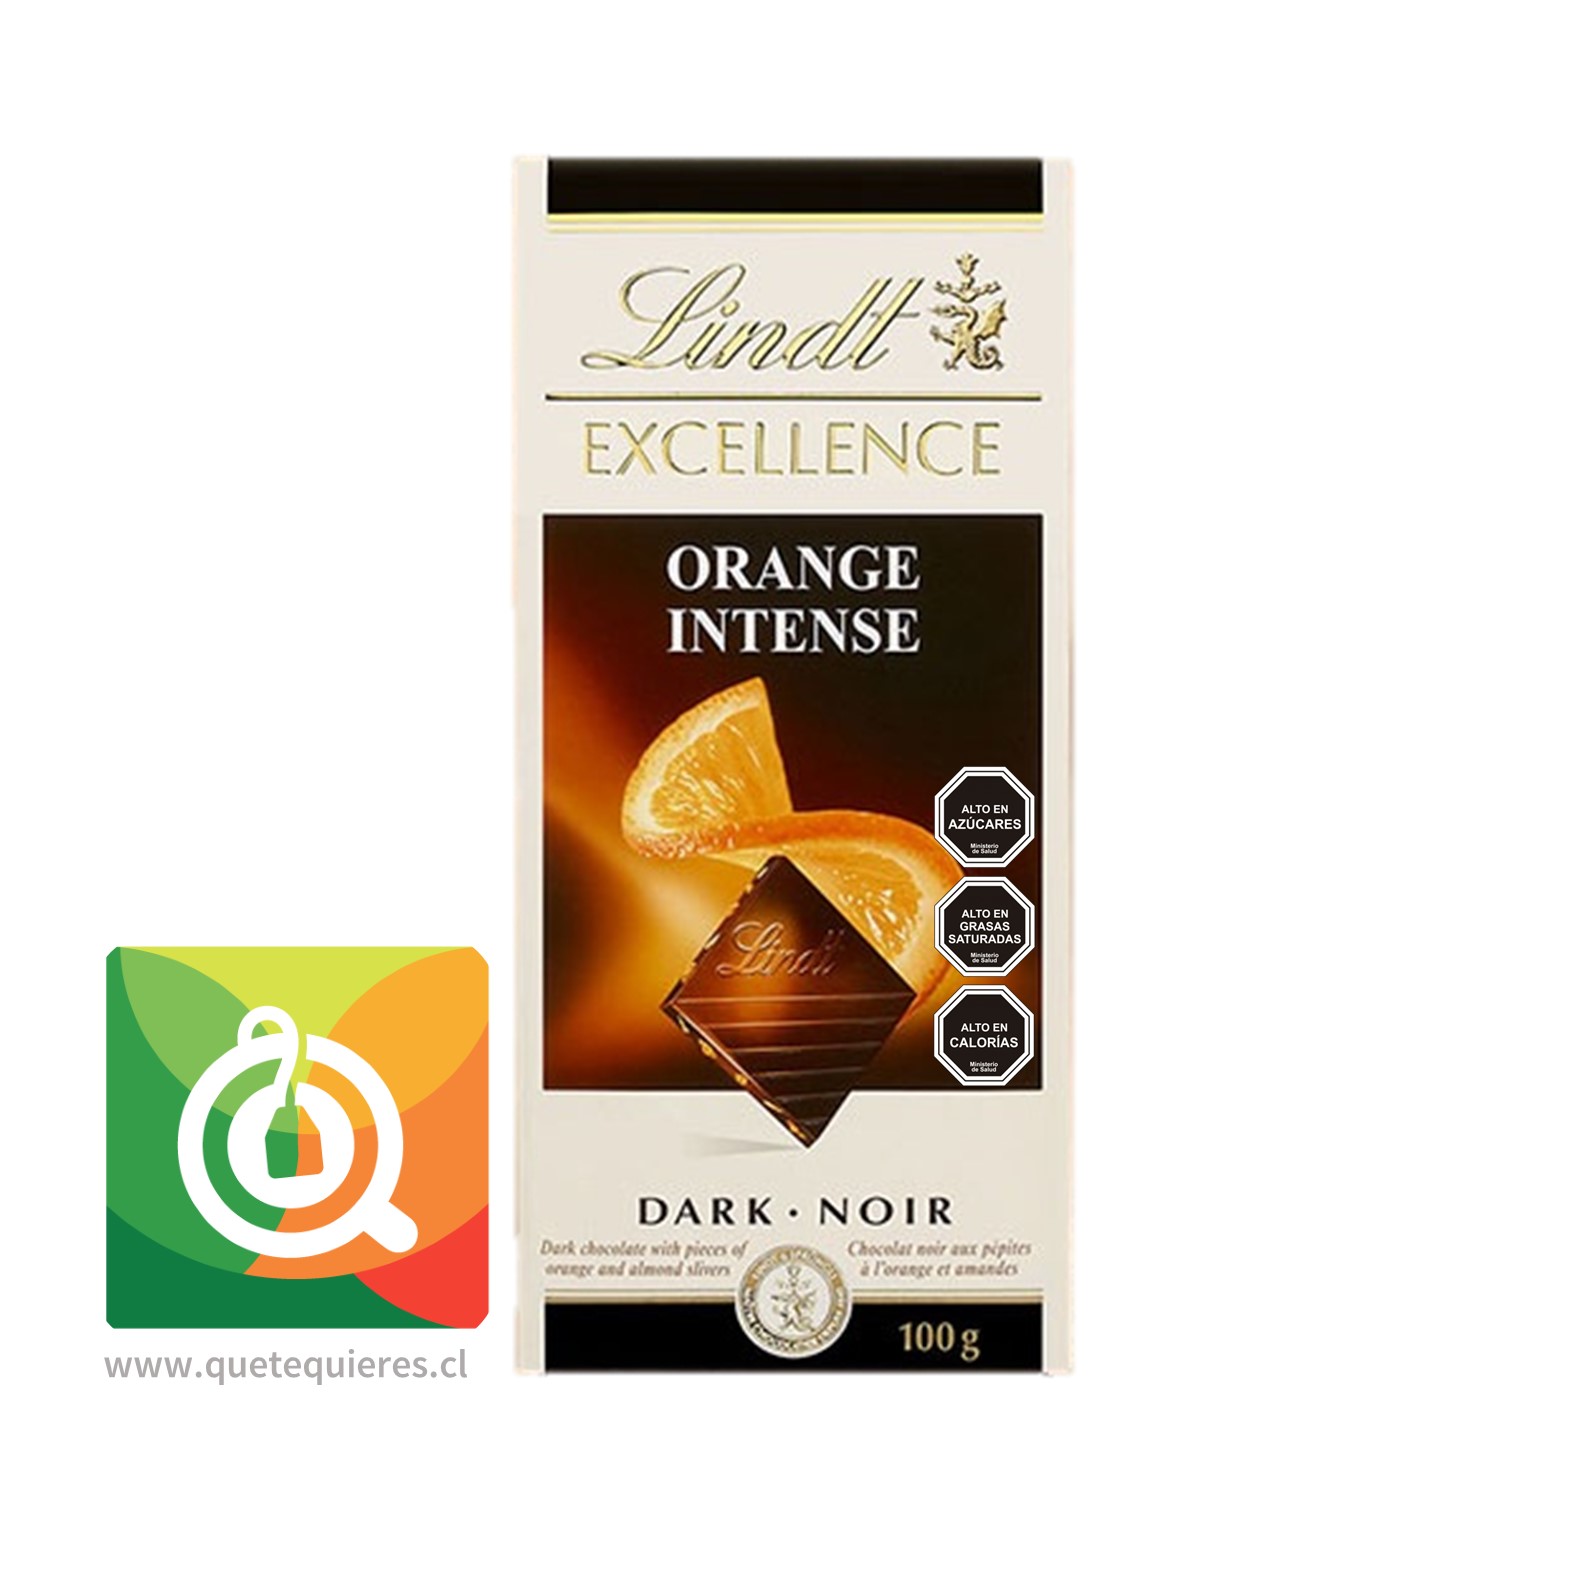 https://cdnx.jumpseller.com/quetequieres/image/7947278/Lindt-Chocolate-Barra-Excellence-Naranaja-48_-cacao-Que-Te-Quieres-qtq.cl.jpg?1654652547